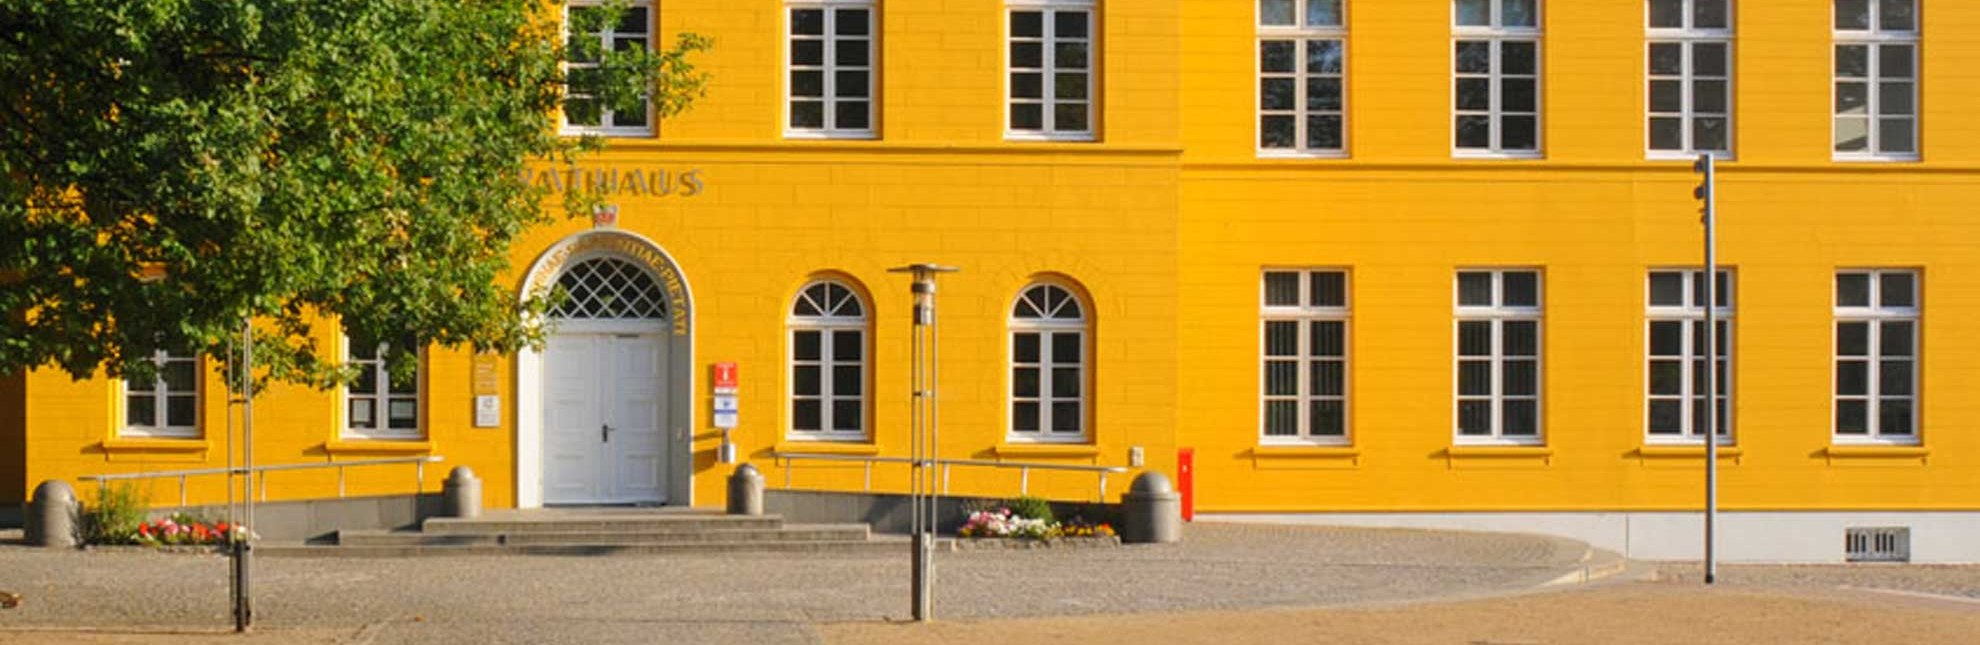 Rathaus Ratzeburg mit Touristinformation, © Tourist-Information Ratzeburg